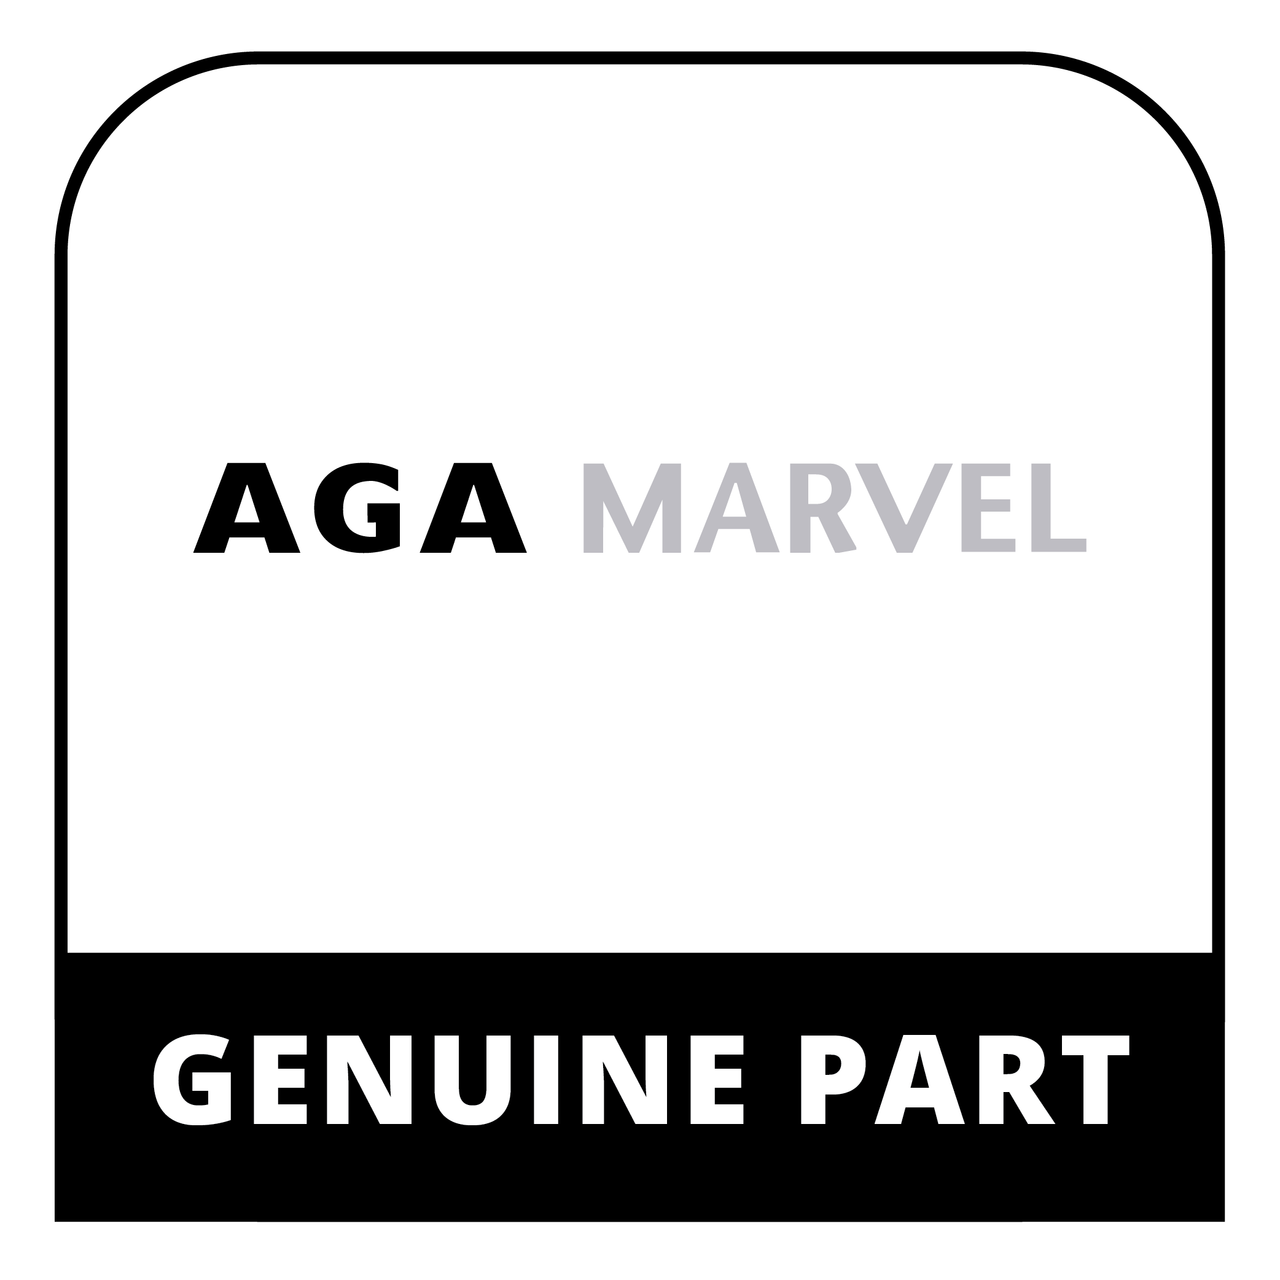 AGA Marvel RO4M998585 - Comb Head Housing (C) Bft11501/202 - Genuine AGA Marvel Part